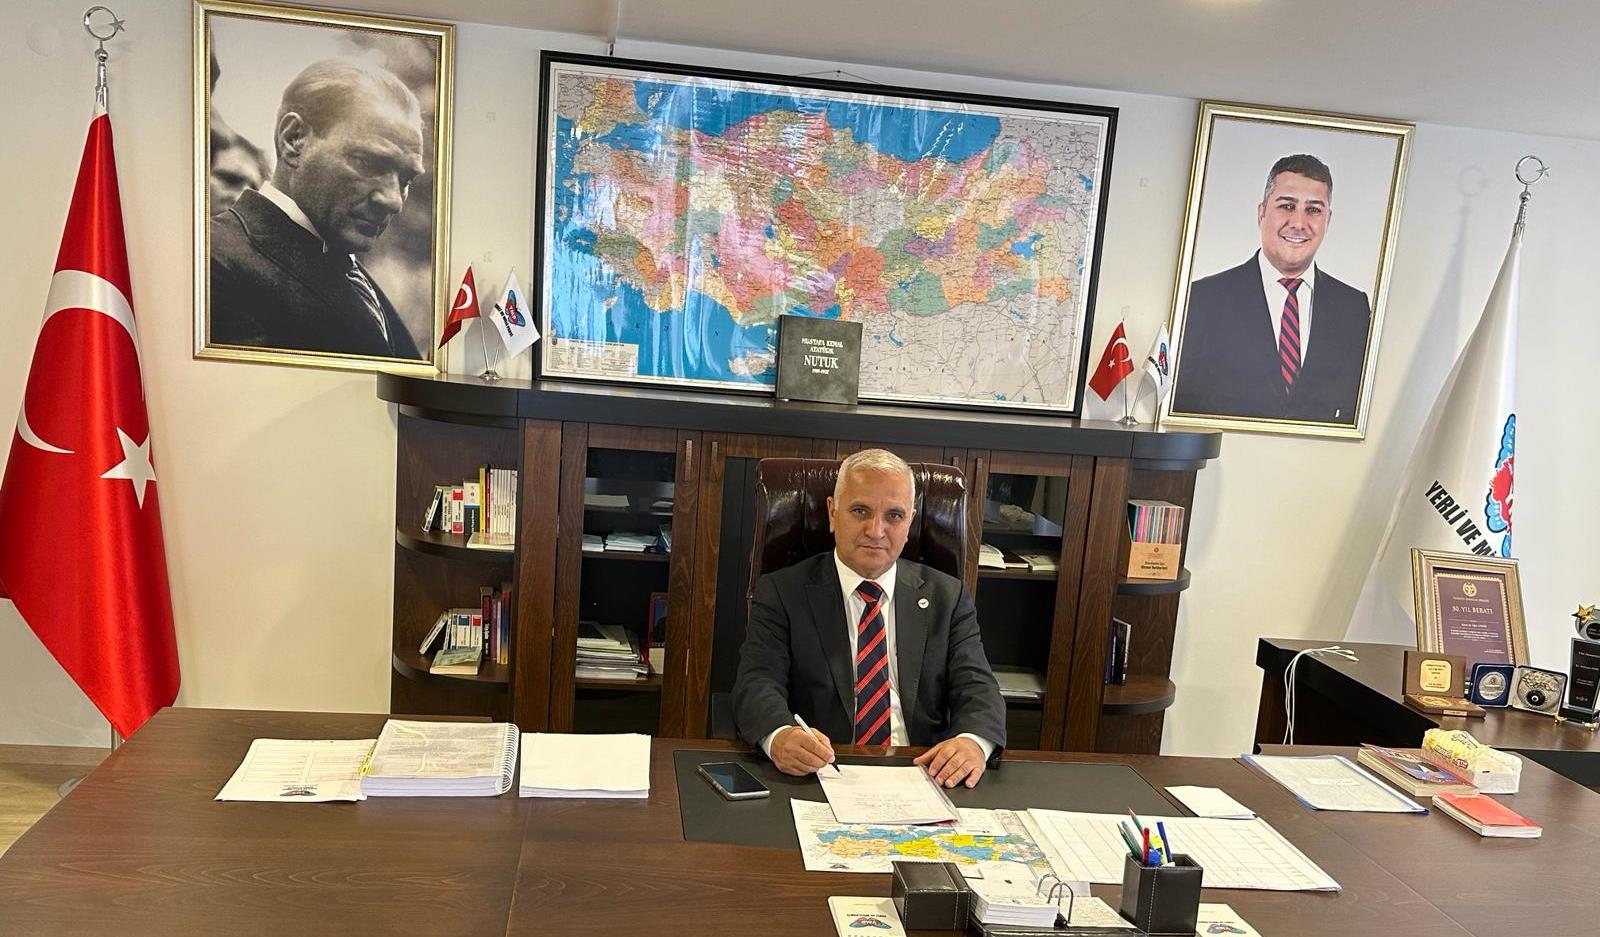 Yerli ve Milli Parti Genel Başkan Yardımcısı Mehmet Atıcı, AKP iktidarının eğitim politikasını eleştirdi. Eğitimde büyük bir istikrarsızlığın hakimiyet kurduğunu belirten Atıcı, "AKP sebebiyle son iki yılda 1 milyon 390 bin öğrencimiz akademik hayatından vazgeçmek zorunda kaldı"dedi. - mehmet atici ymp